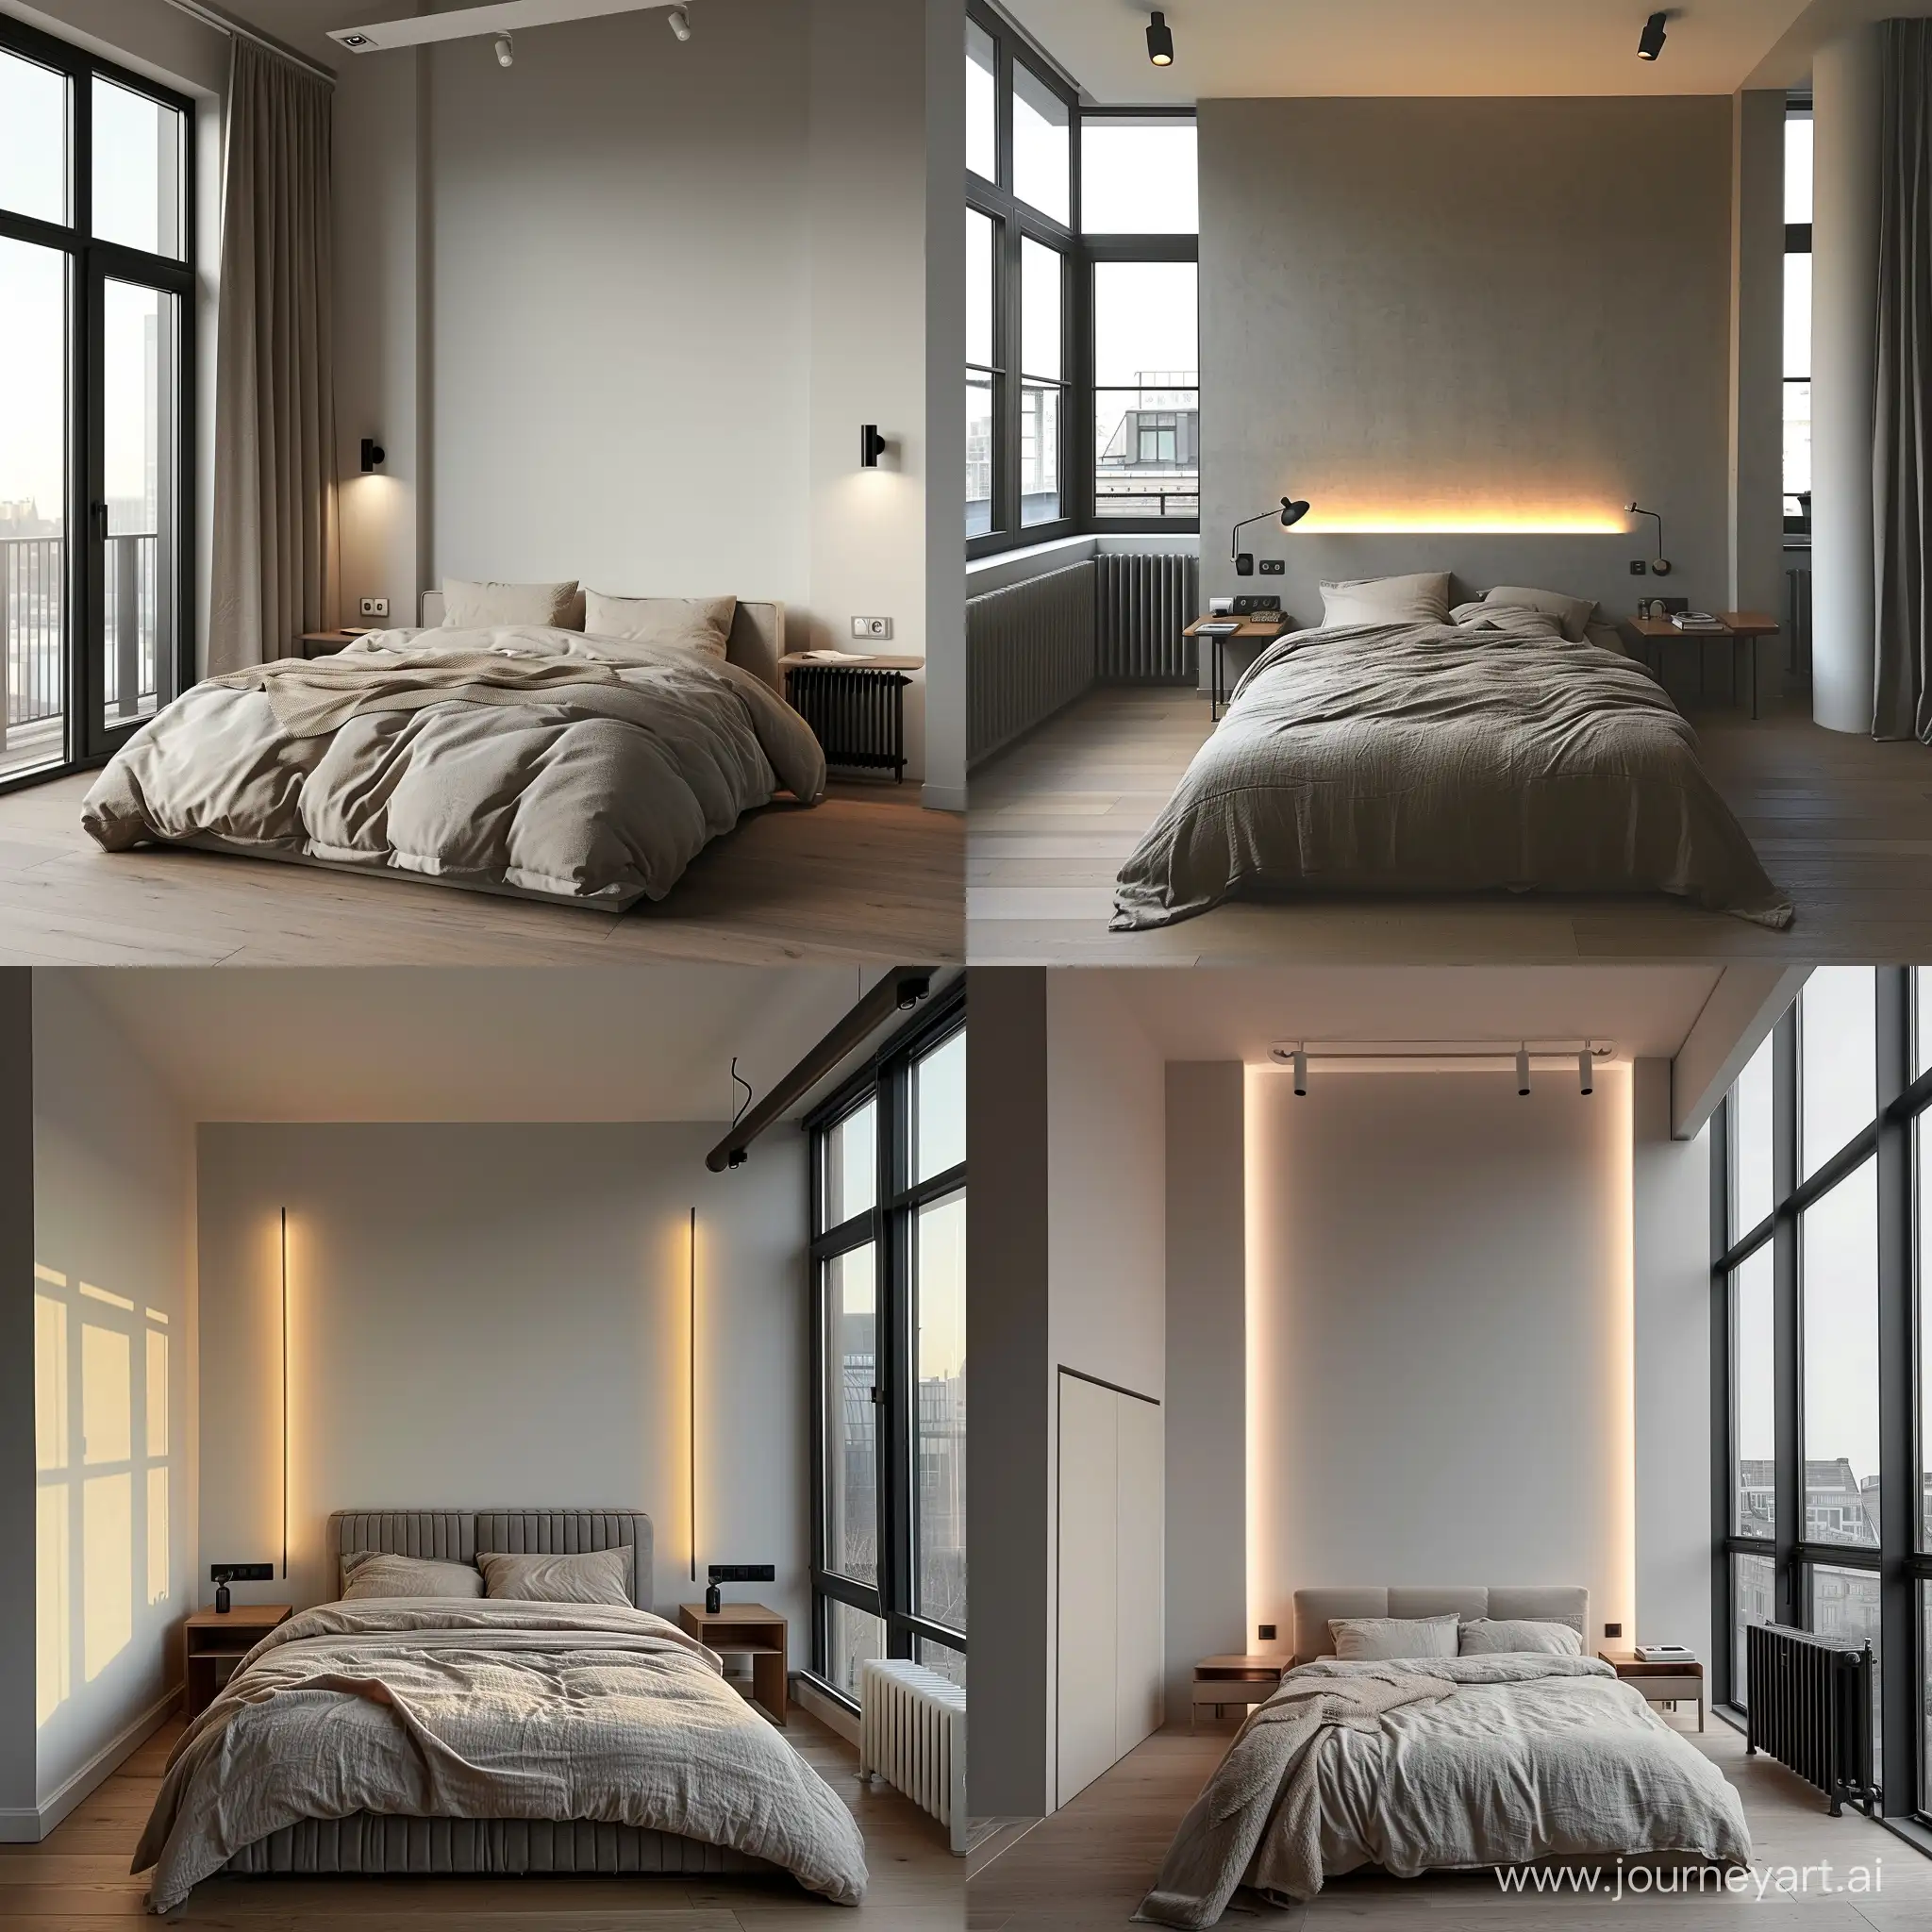 спальня минимализм, скала на стене светлая, кровать мягкая, тумбочки, окна в пол, радиатор
